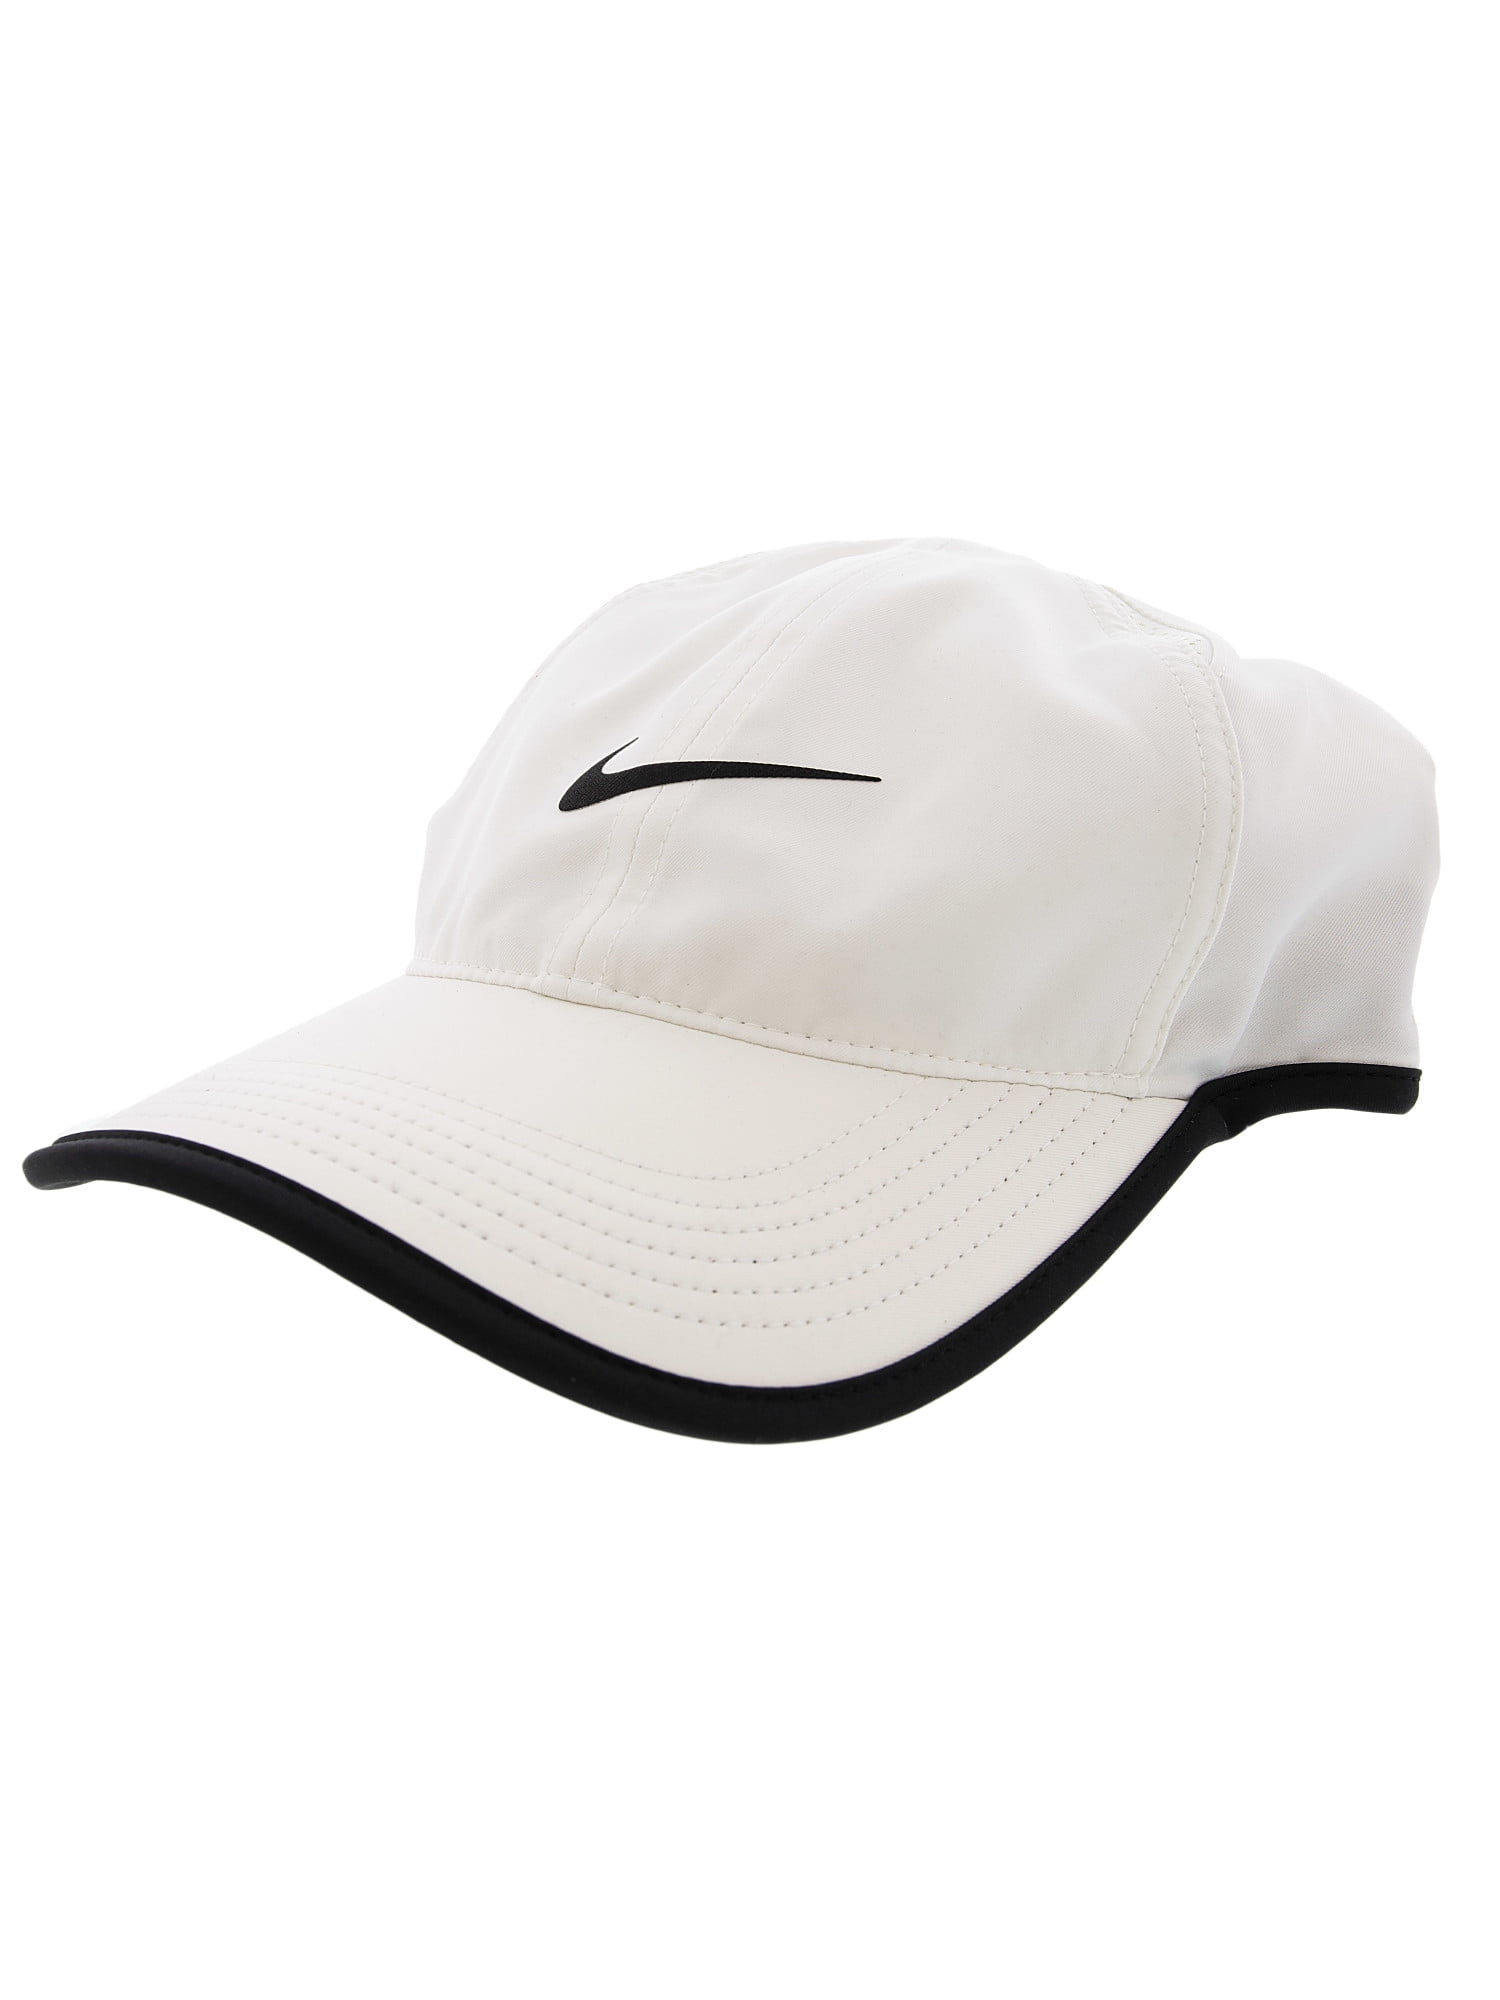 Buy > tennis nike cap > in stock